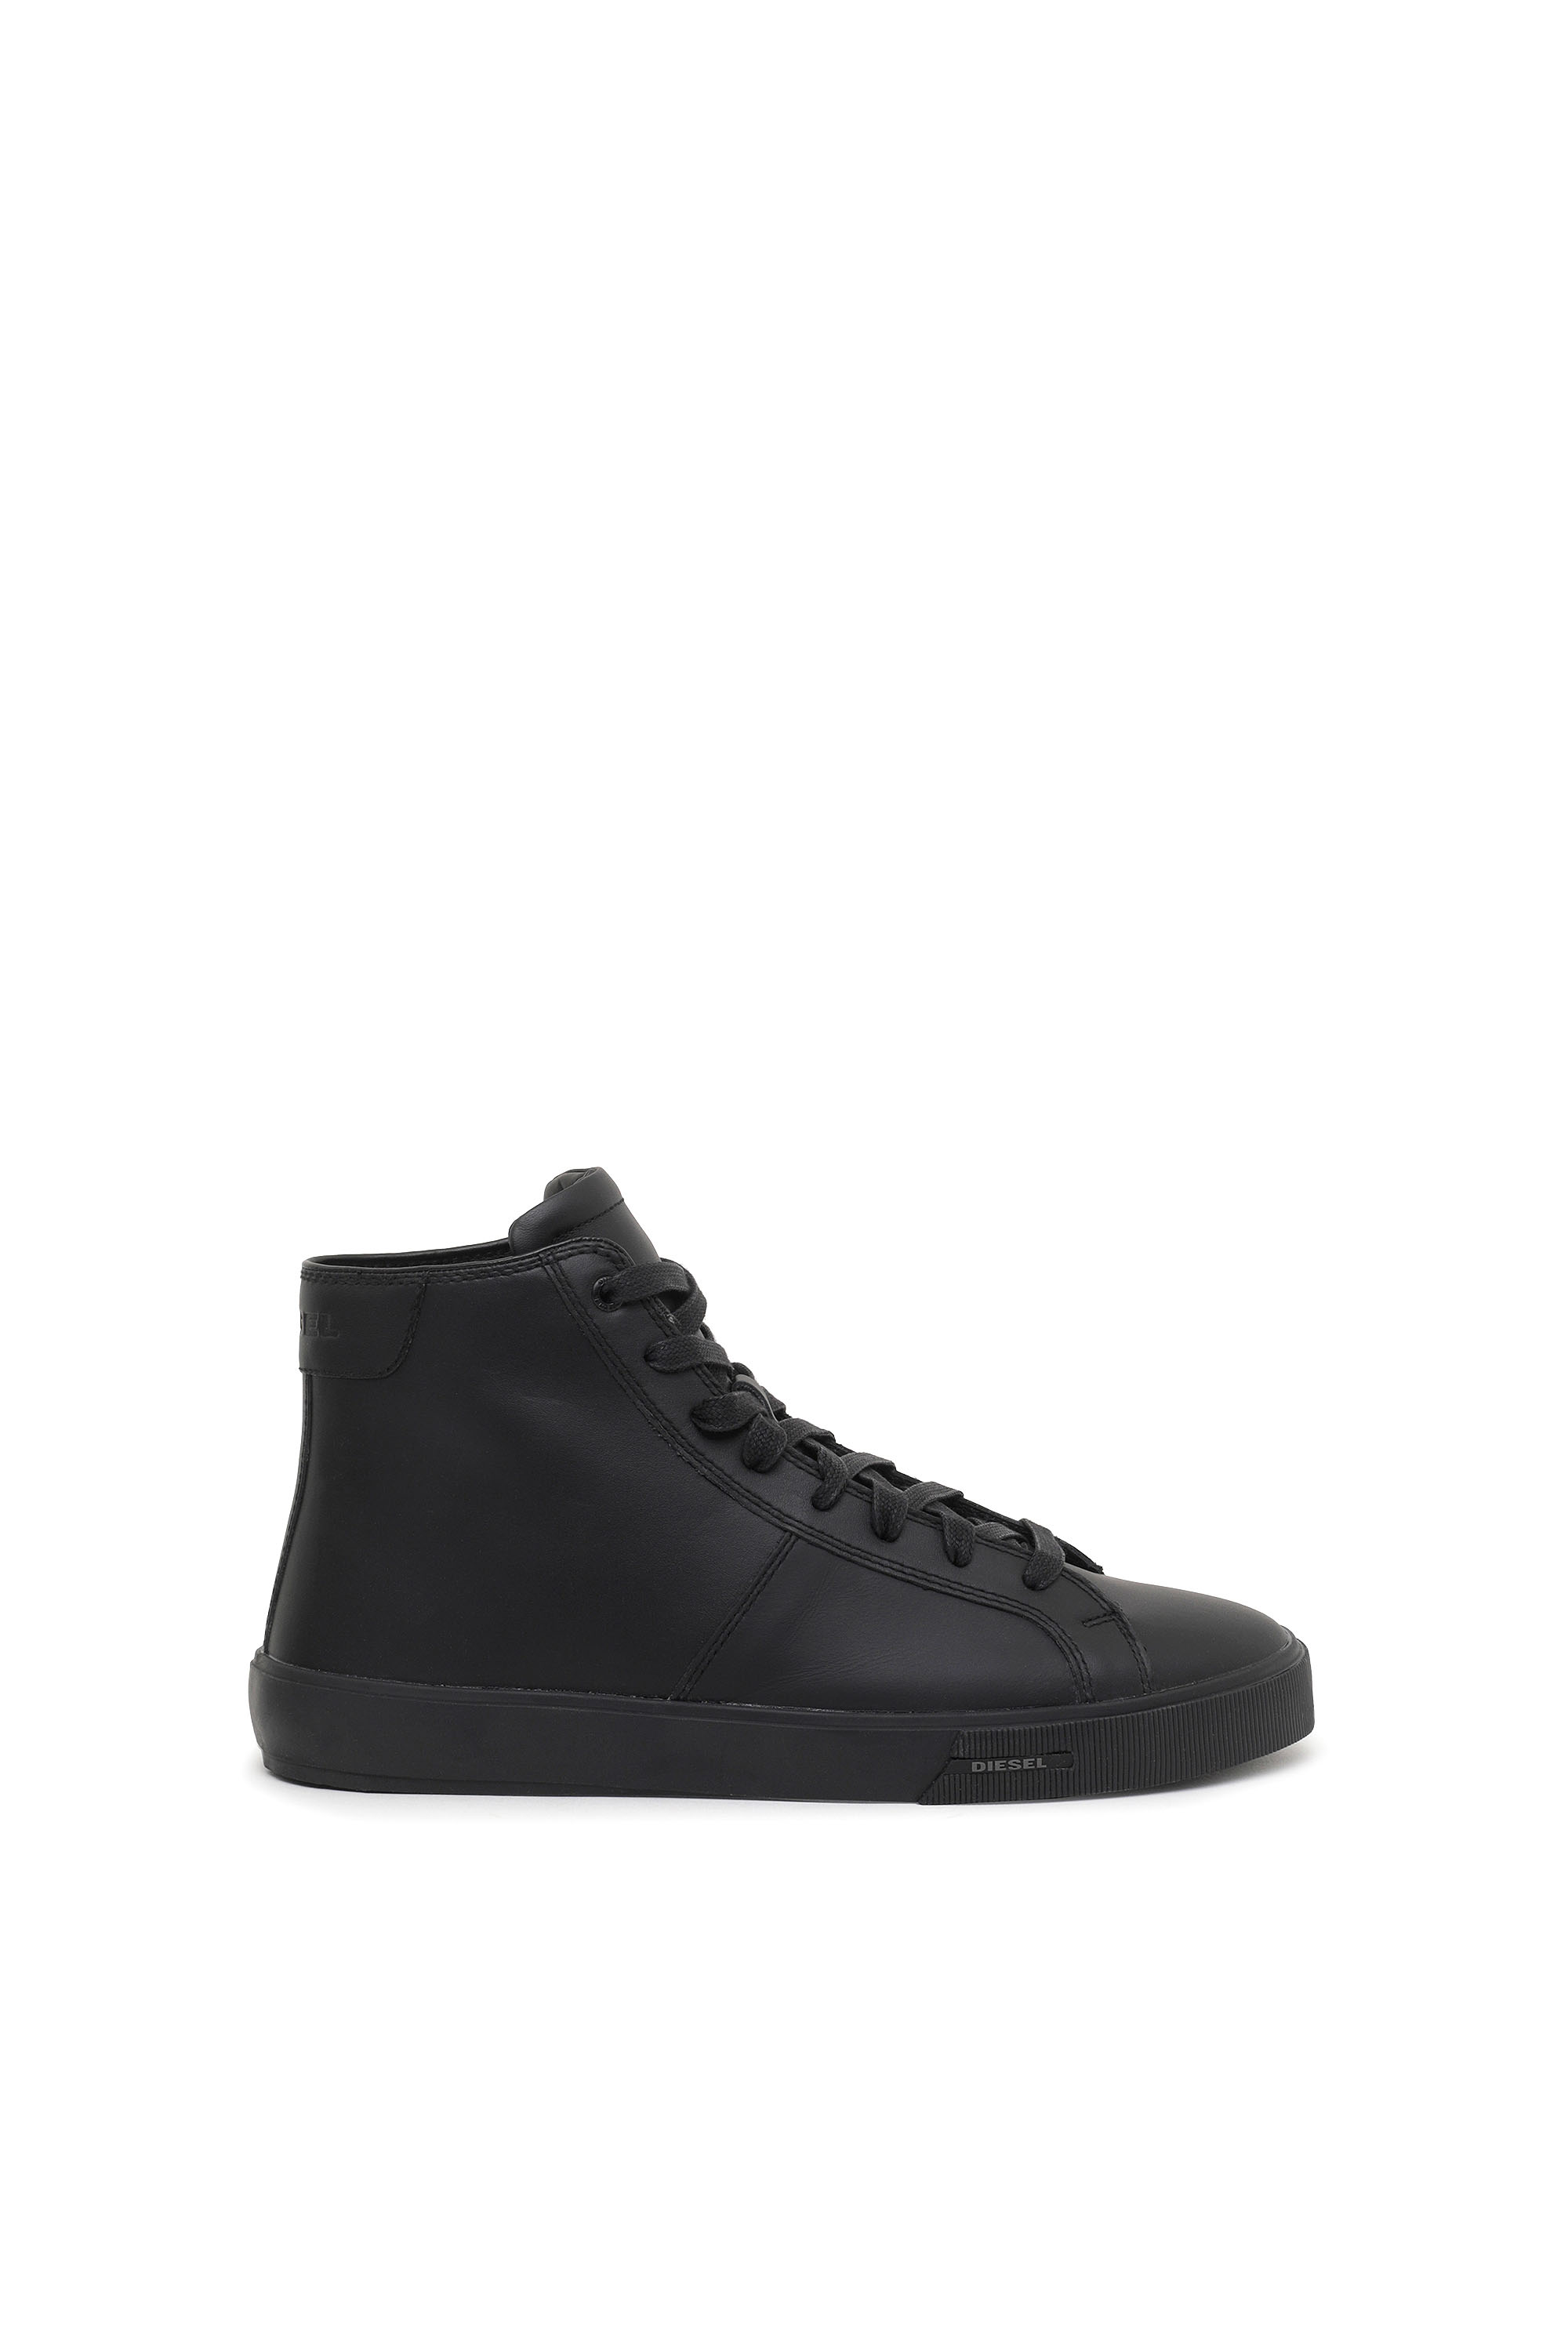 Diesel High-top Sneakers In Leather In Black